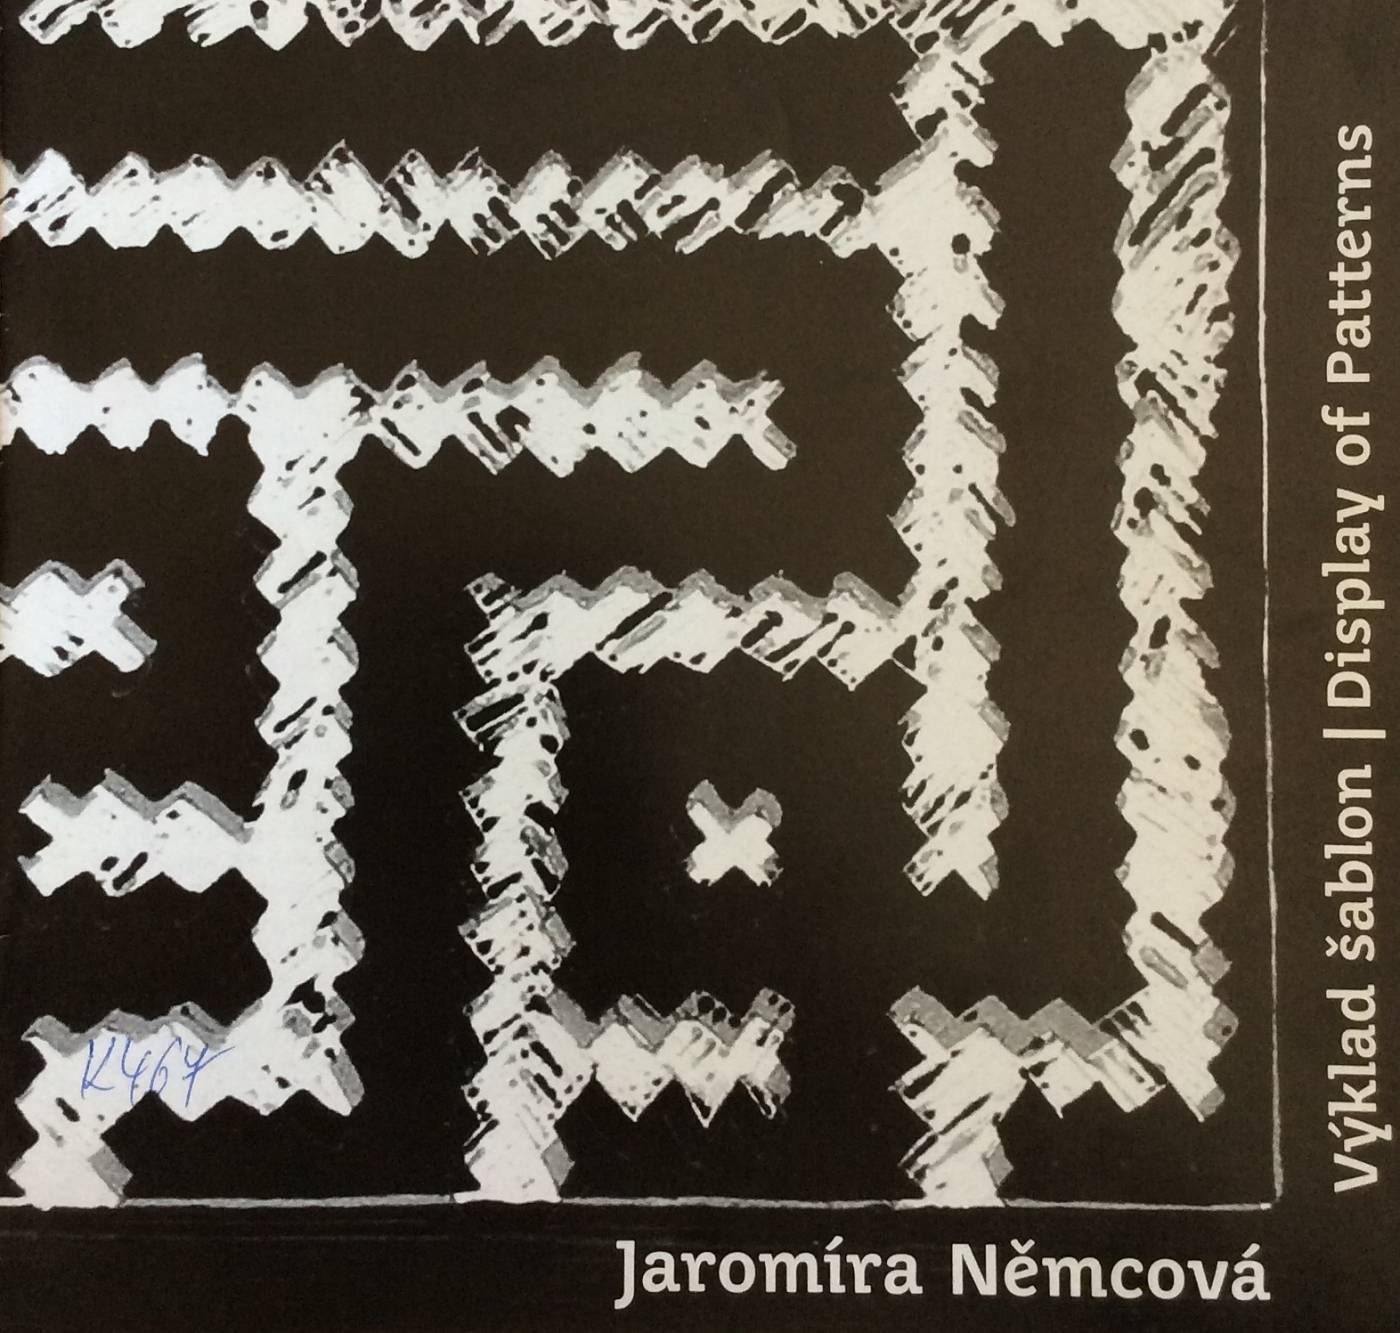 Jaromíra Němcová – Výklad šablon / Display of Patterns